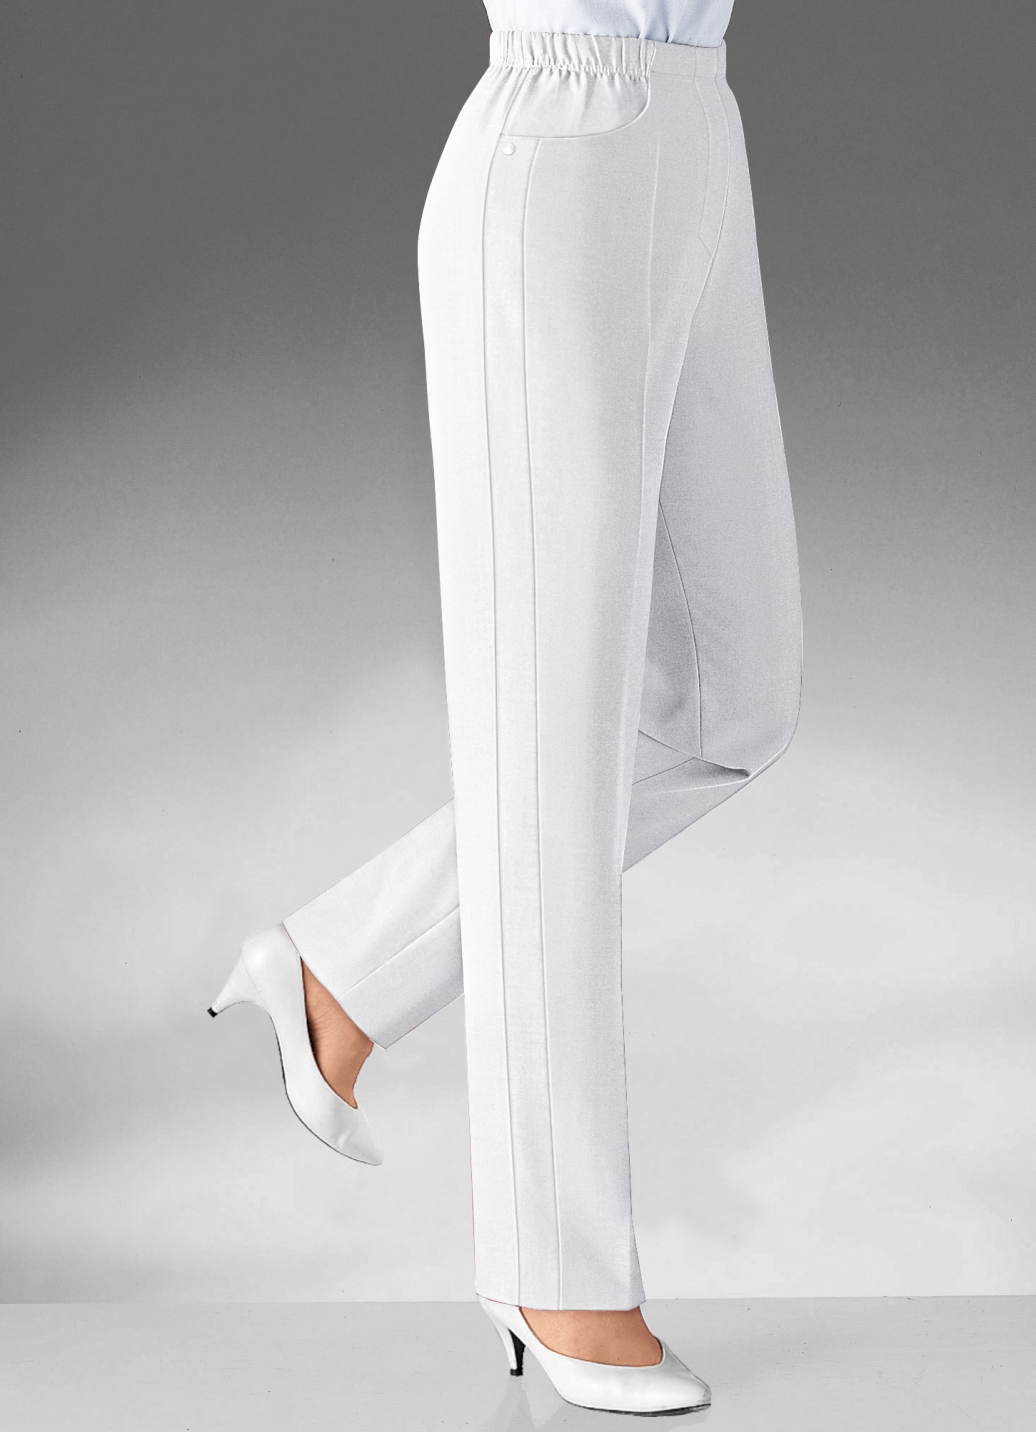 Hose mit vorverlegter Seitennaht in 8 Farben, Weiss, Größe 215 von KLAUS MODELLE